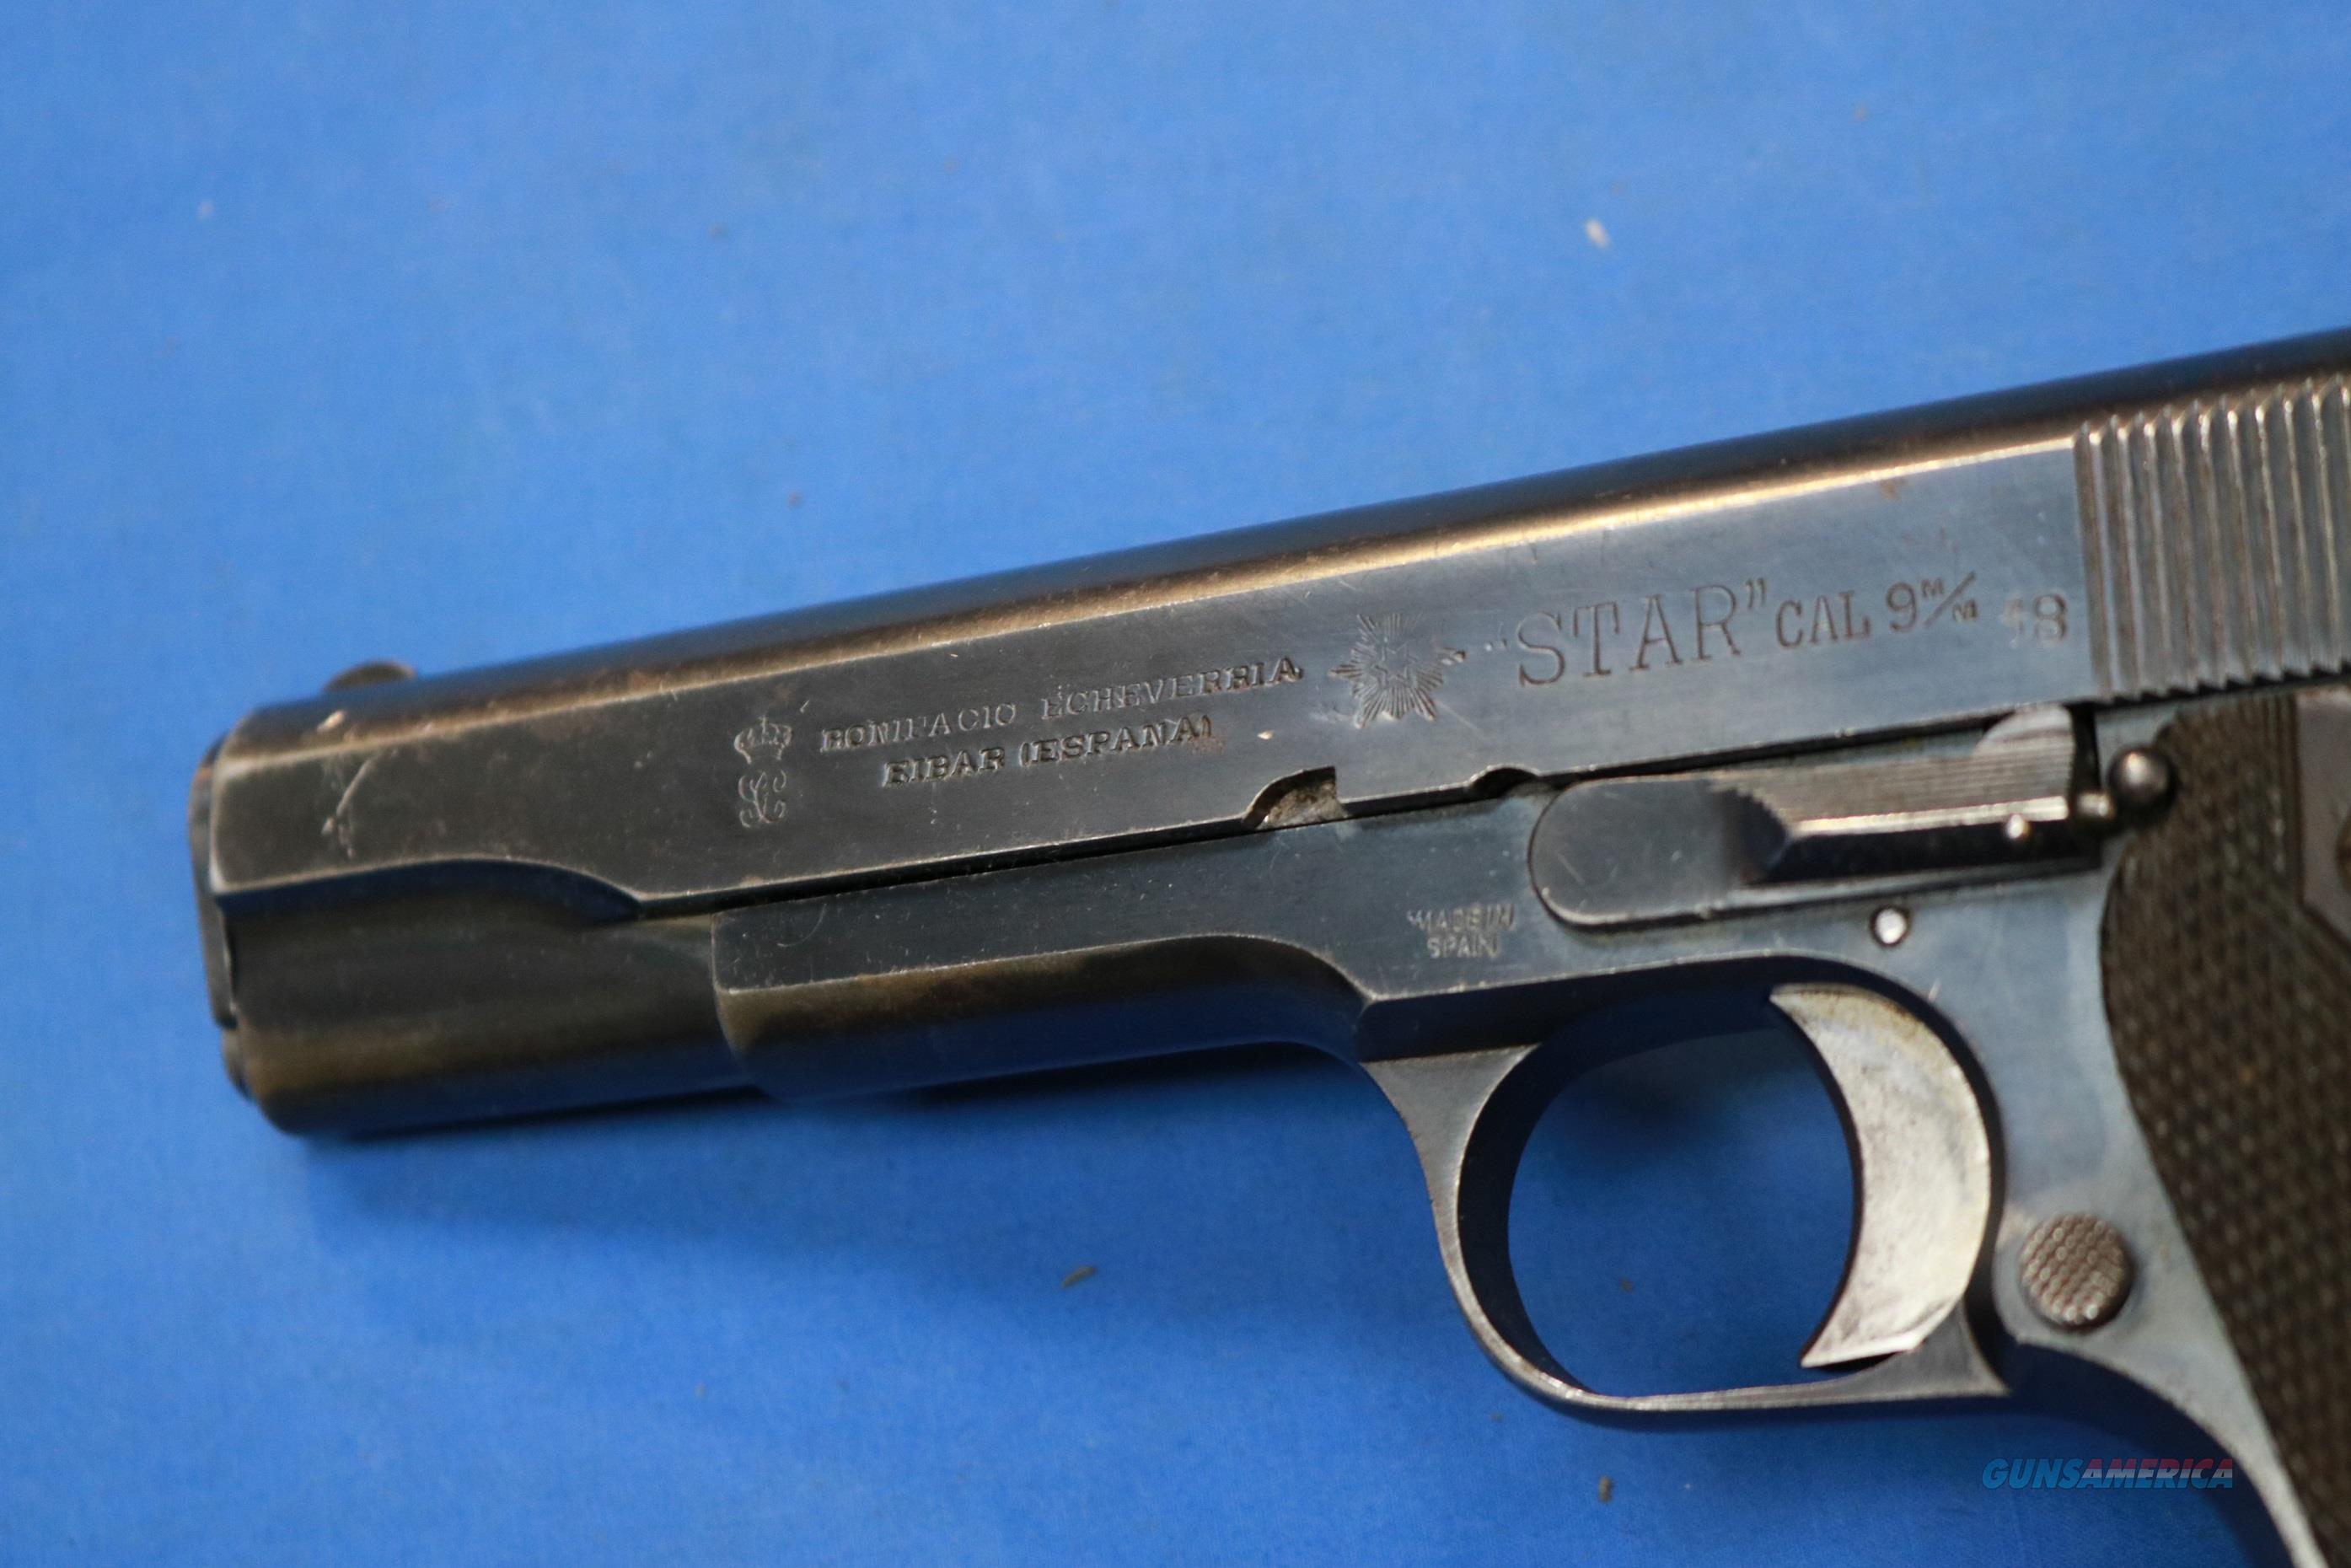 1921 star pistol